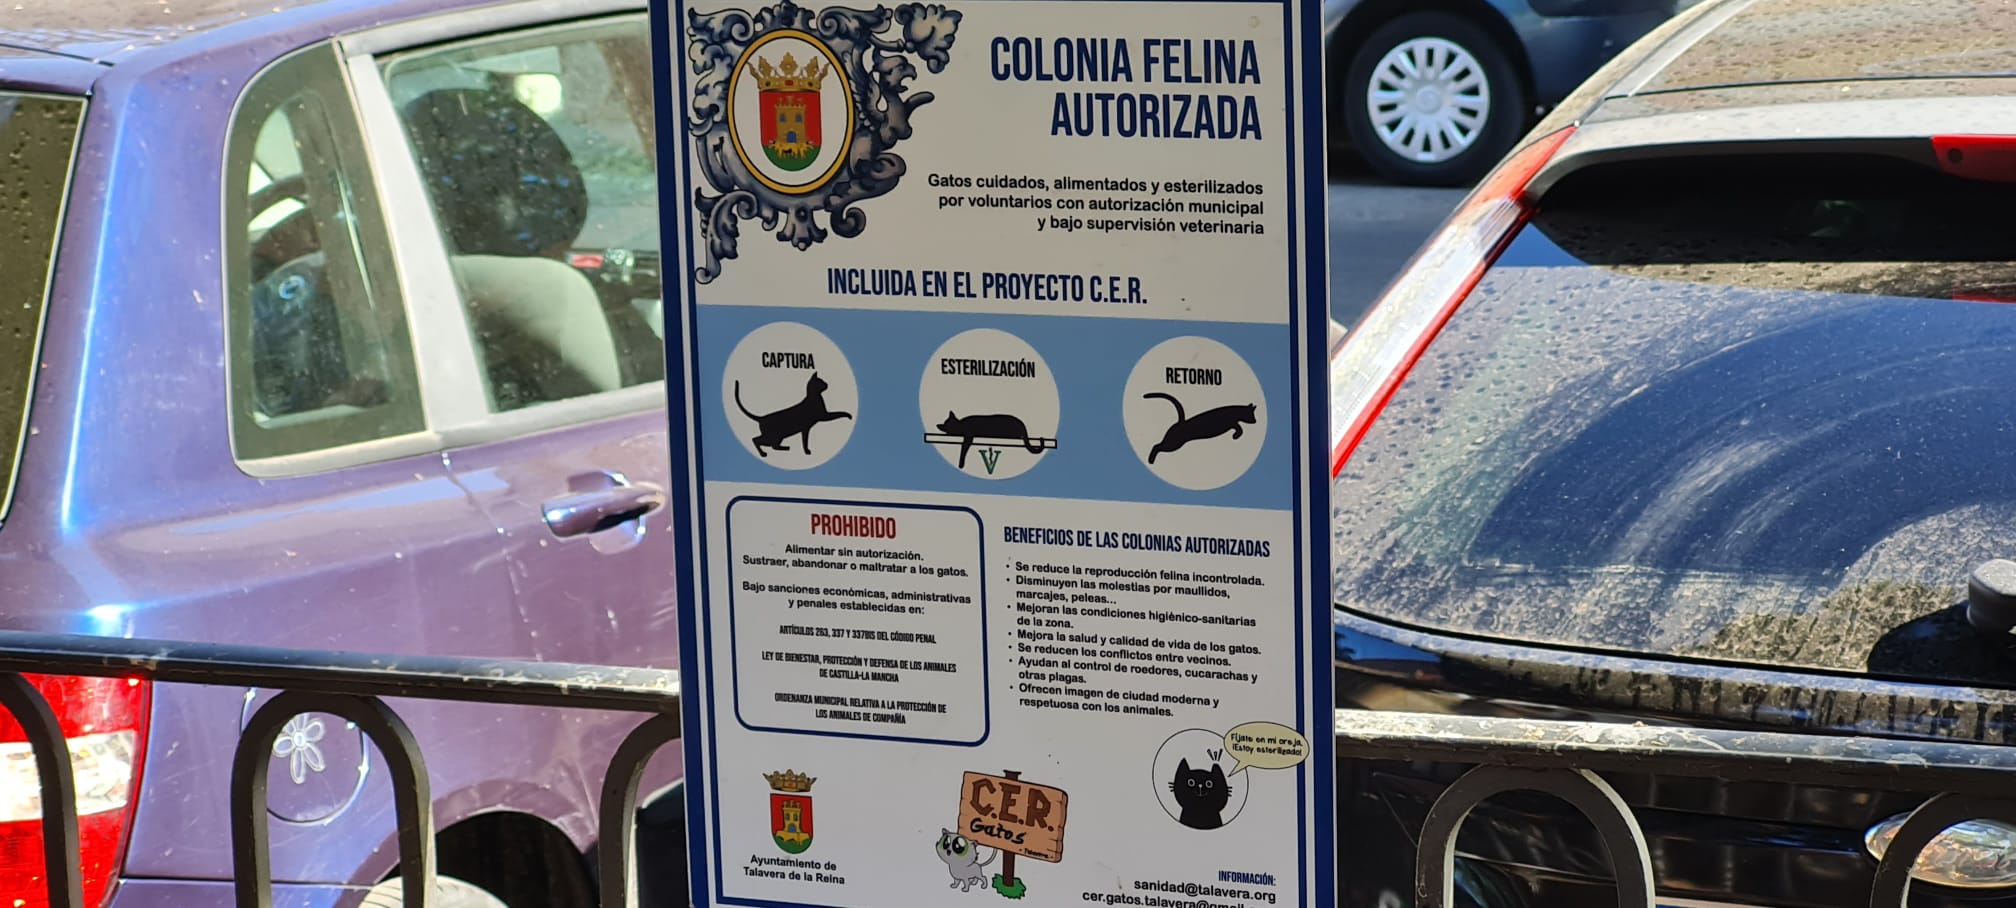 Talavera instala nuevos comederos para colonias felinas 